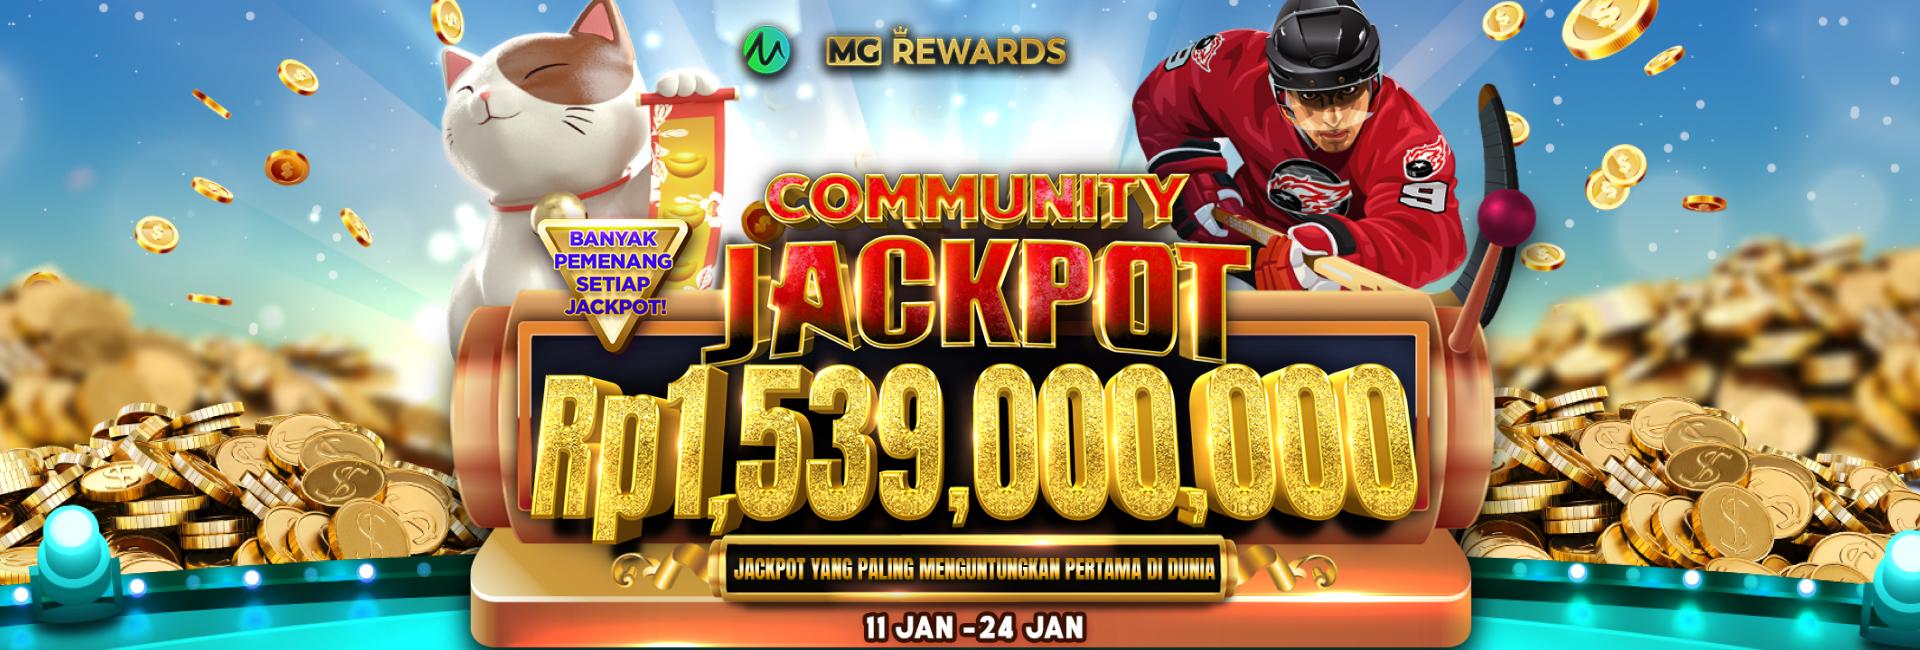 MG Community Jackpot